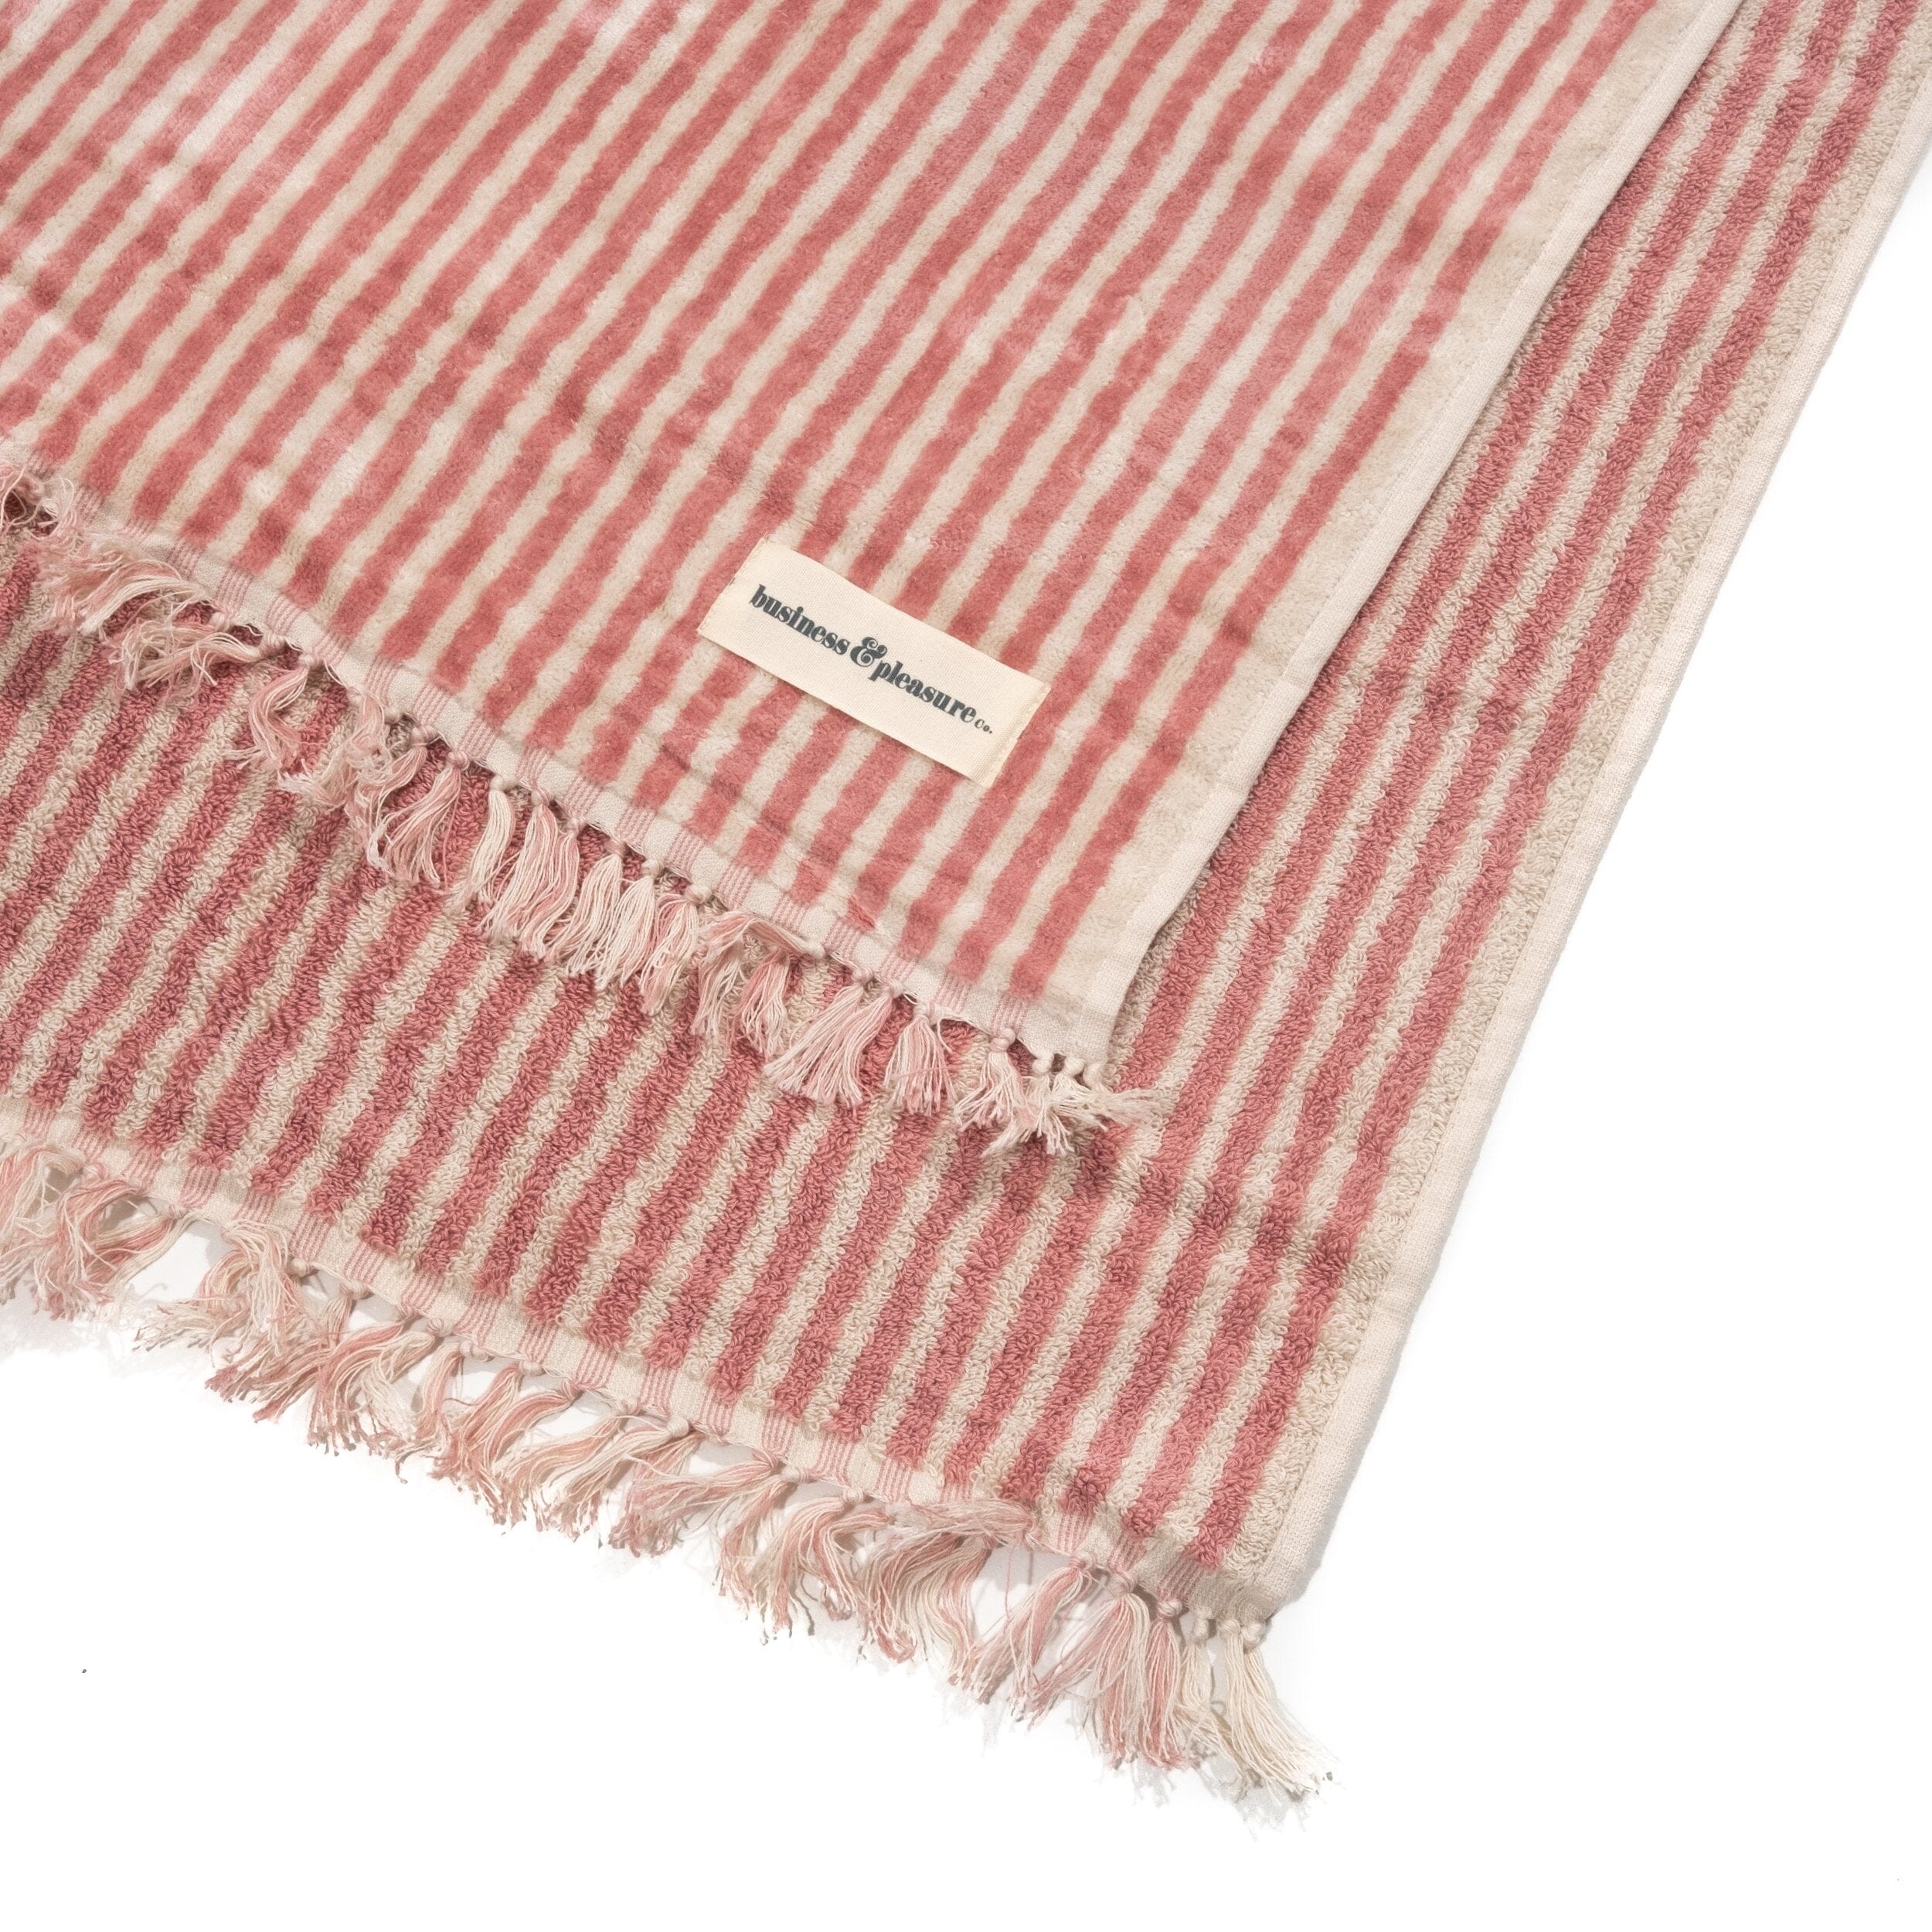 The Beach Towel - Lauren's Pink Stripe